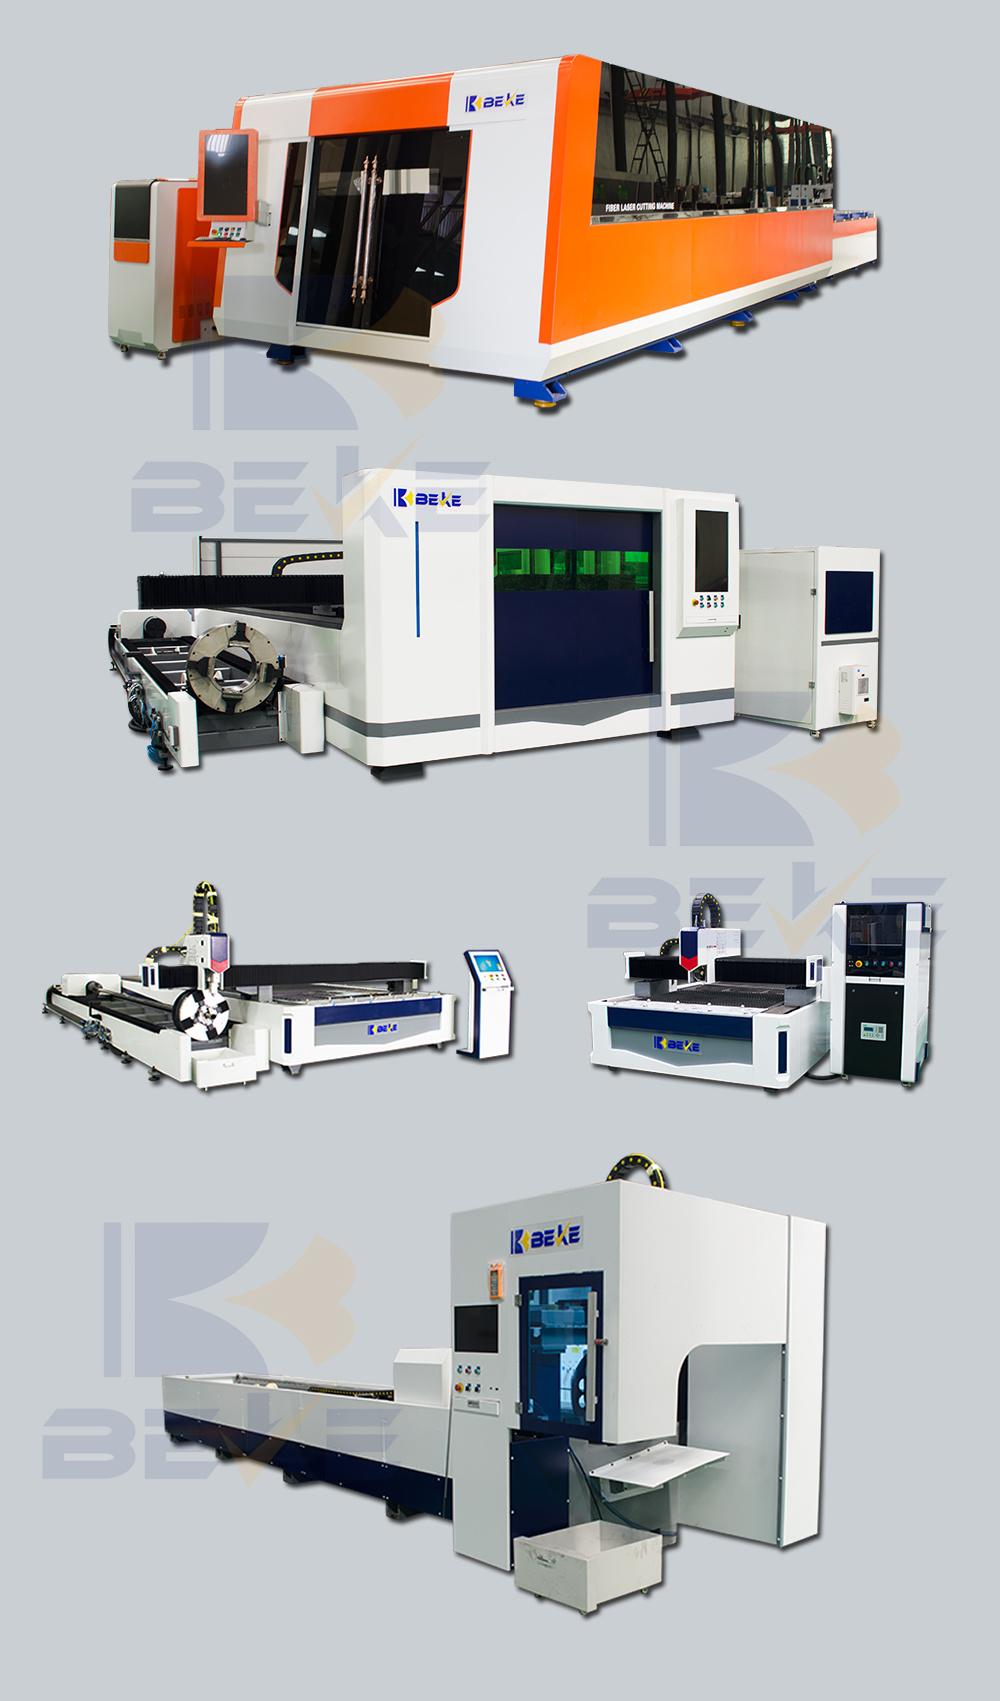 Nanjing Beke High Performance Bk3015 4000W Stainless Steel Sheet CNC Fiber Laser Cutting Machine